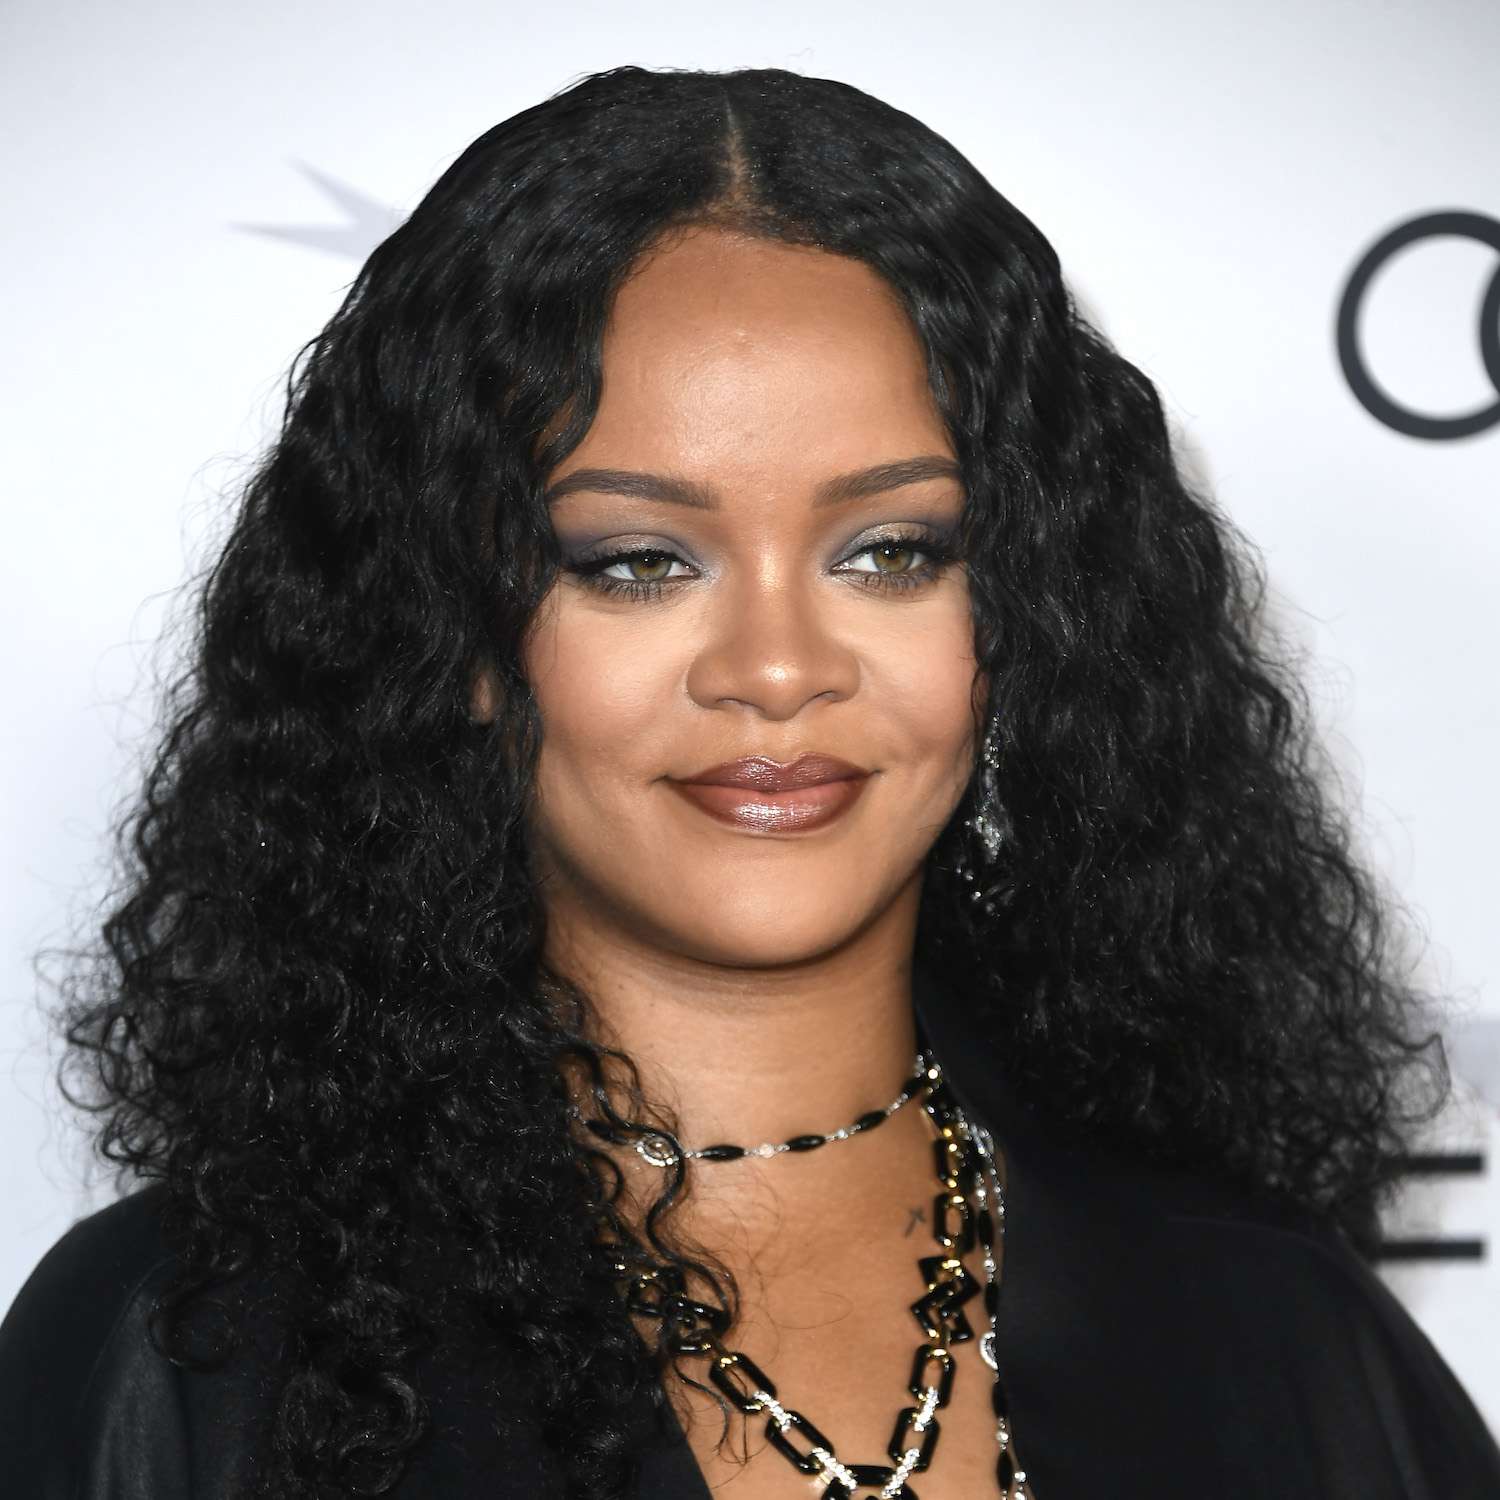 Rihanna usa um penteado com cabelos longos e encaracolados e um fino enquadramento